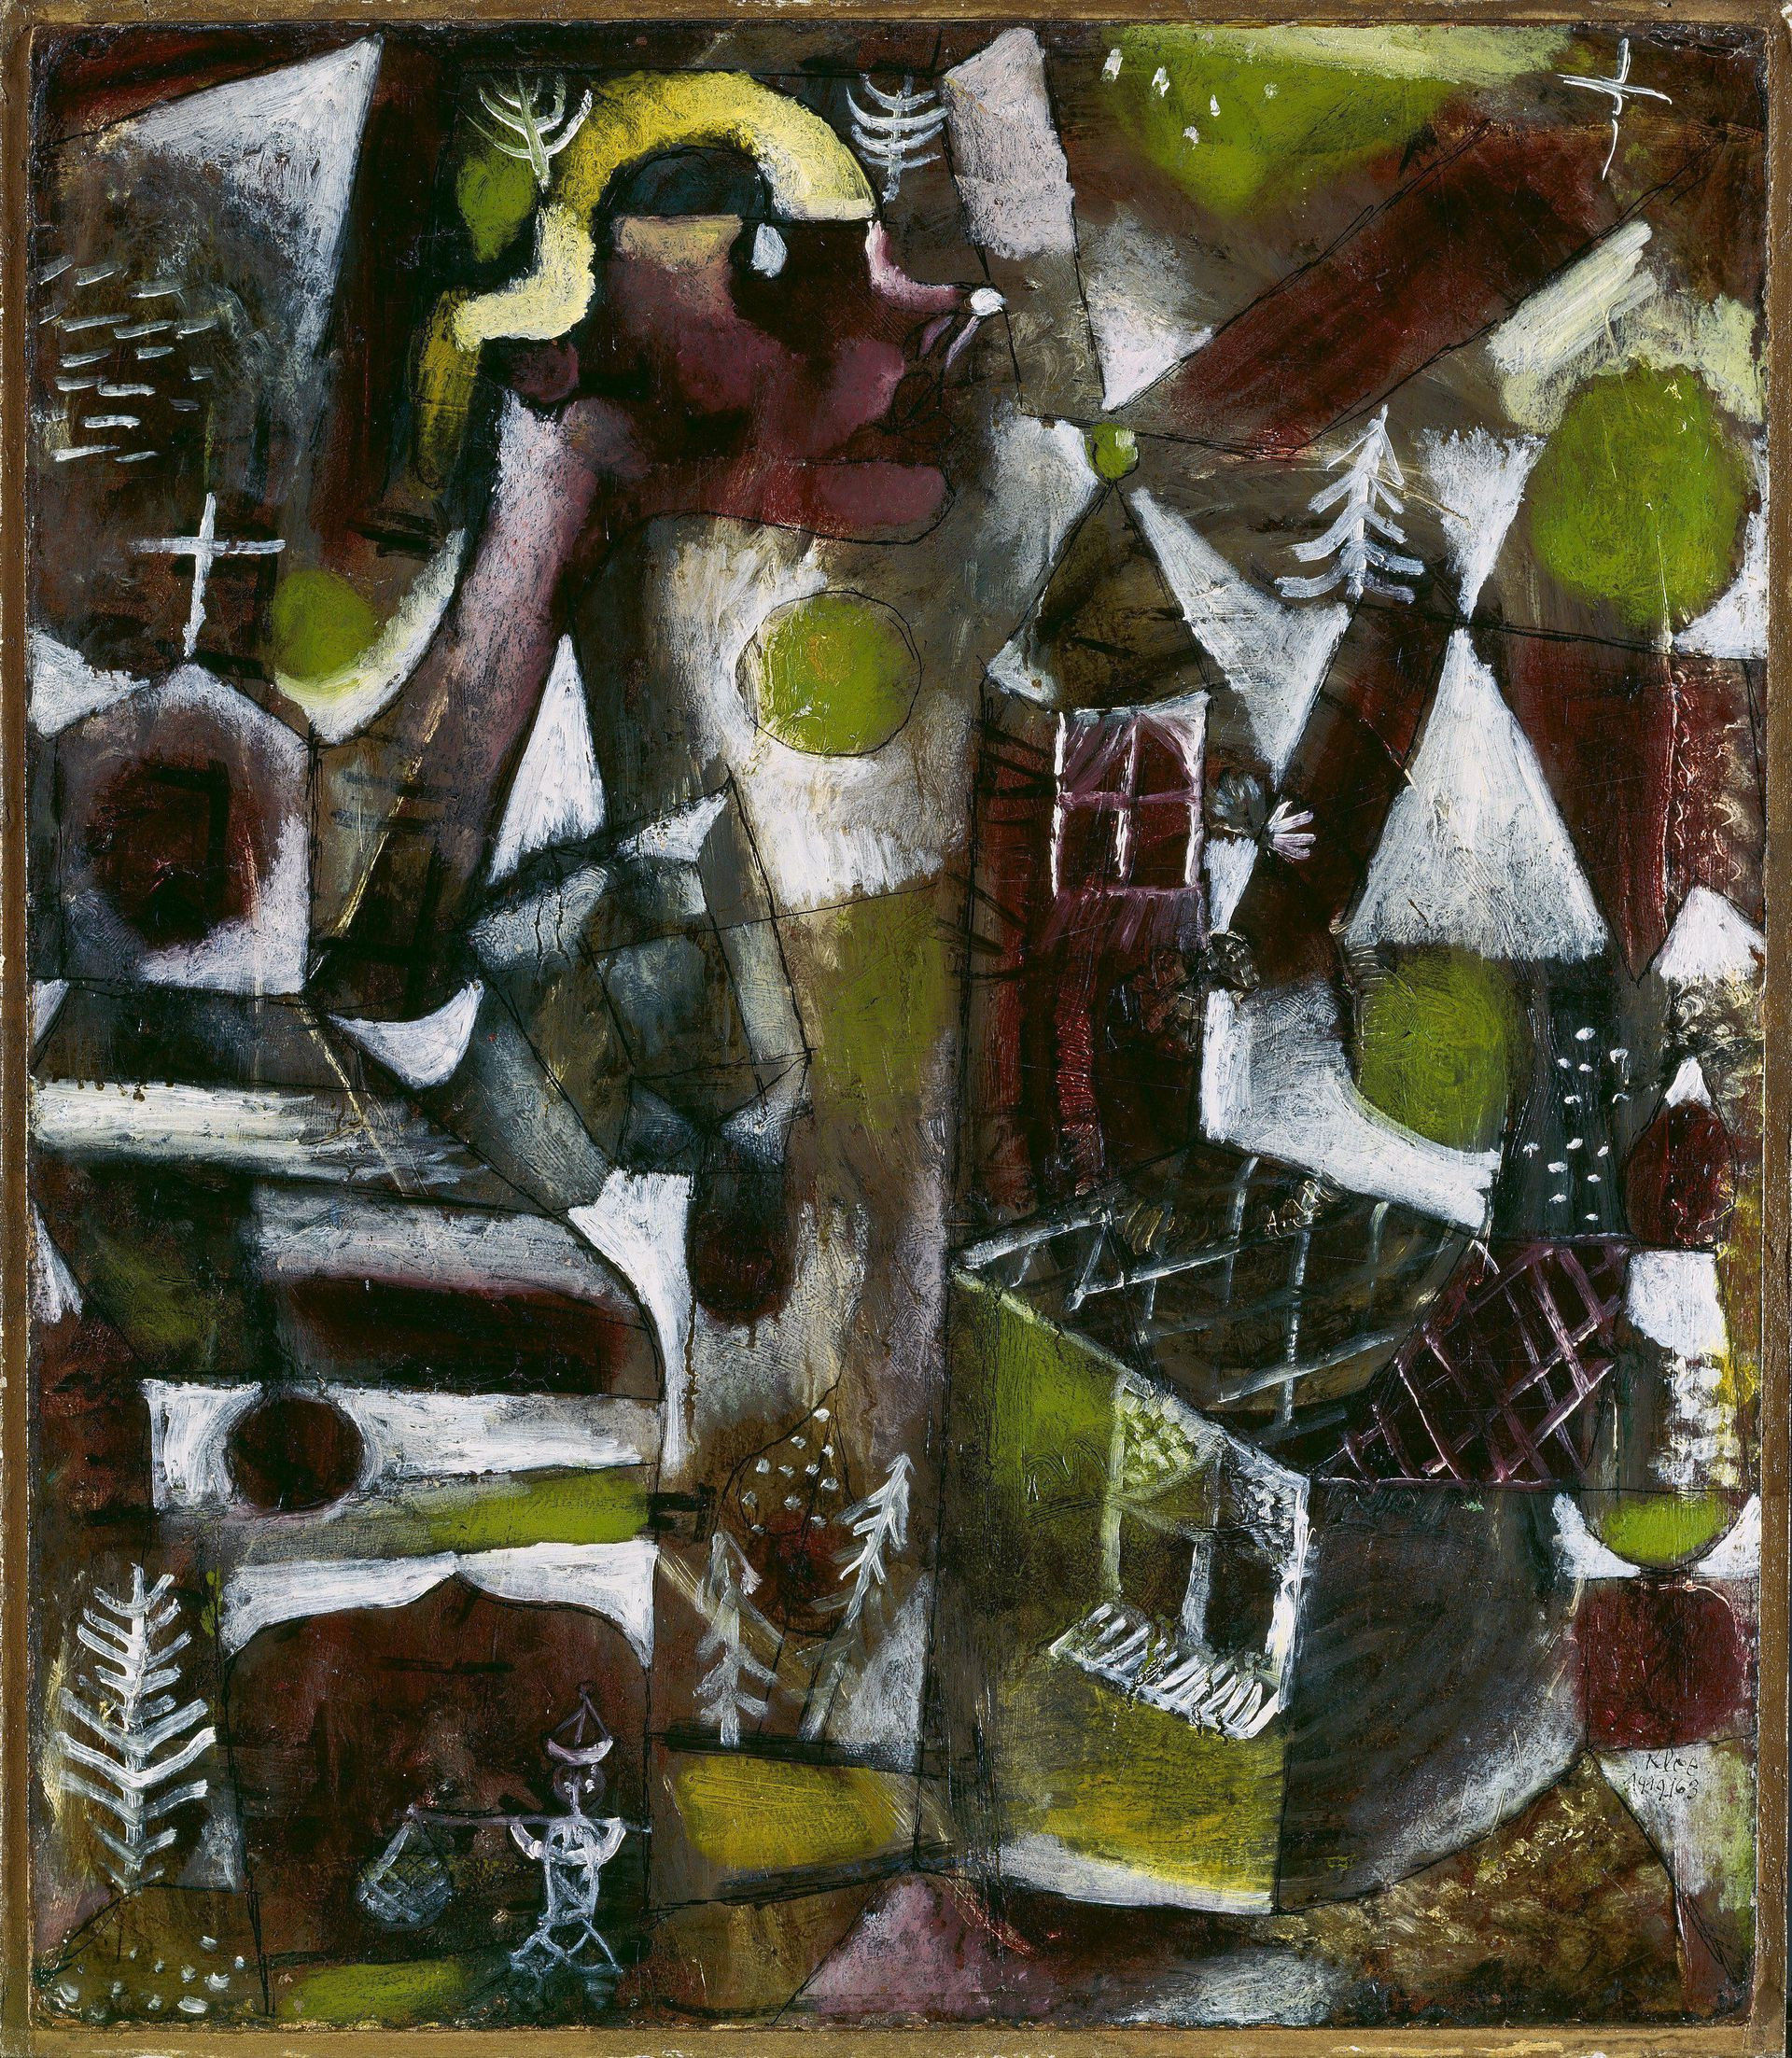  Swamp Legend painting by Paul Klee